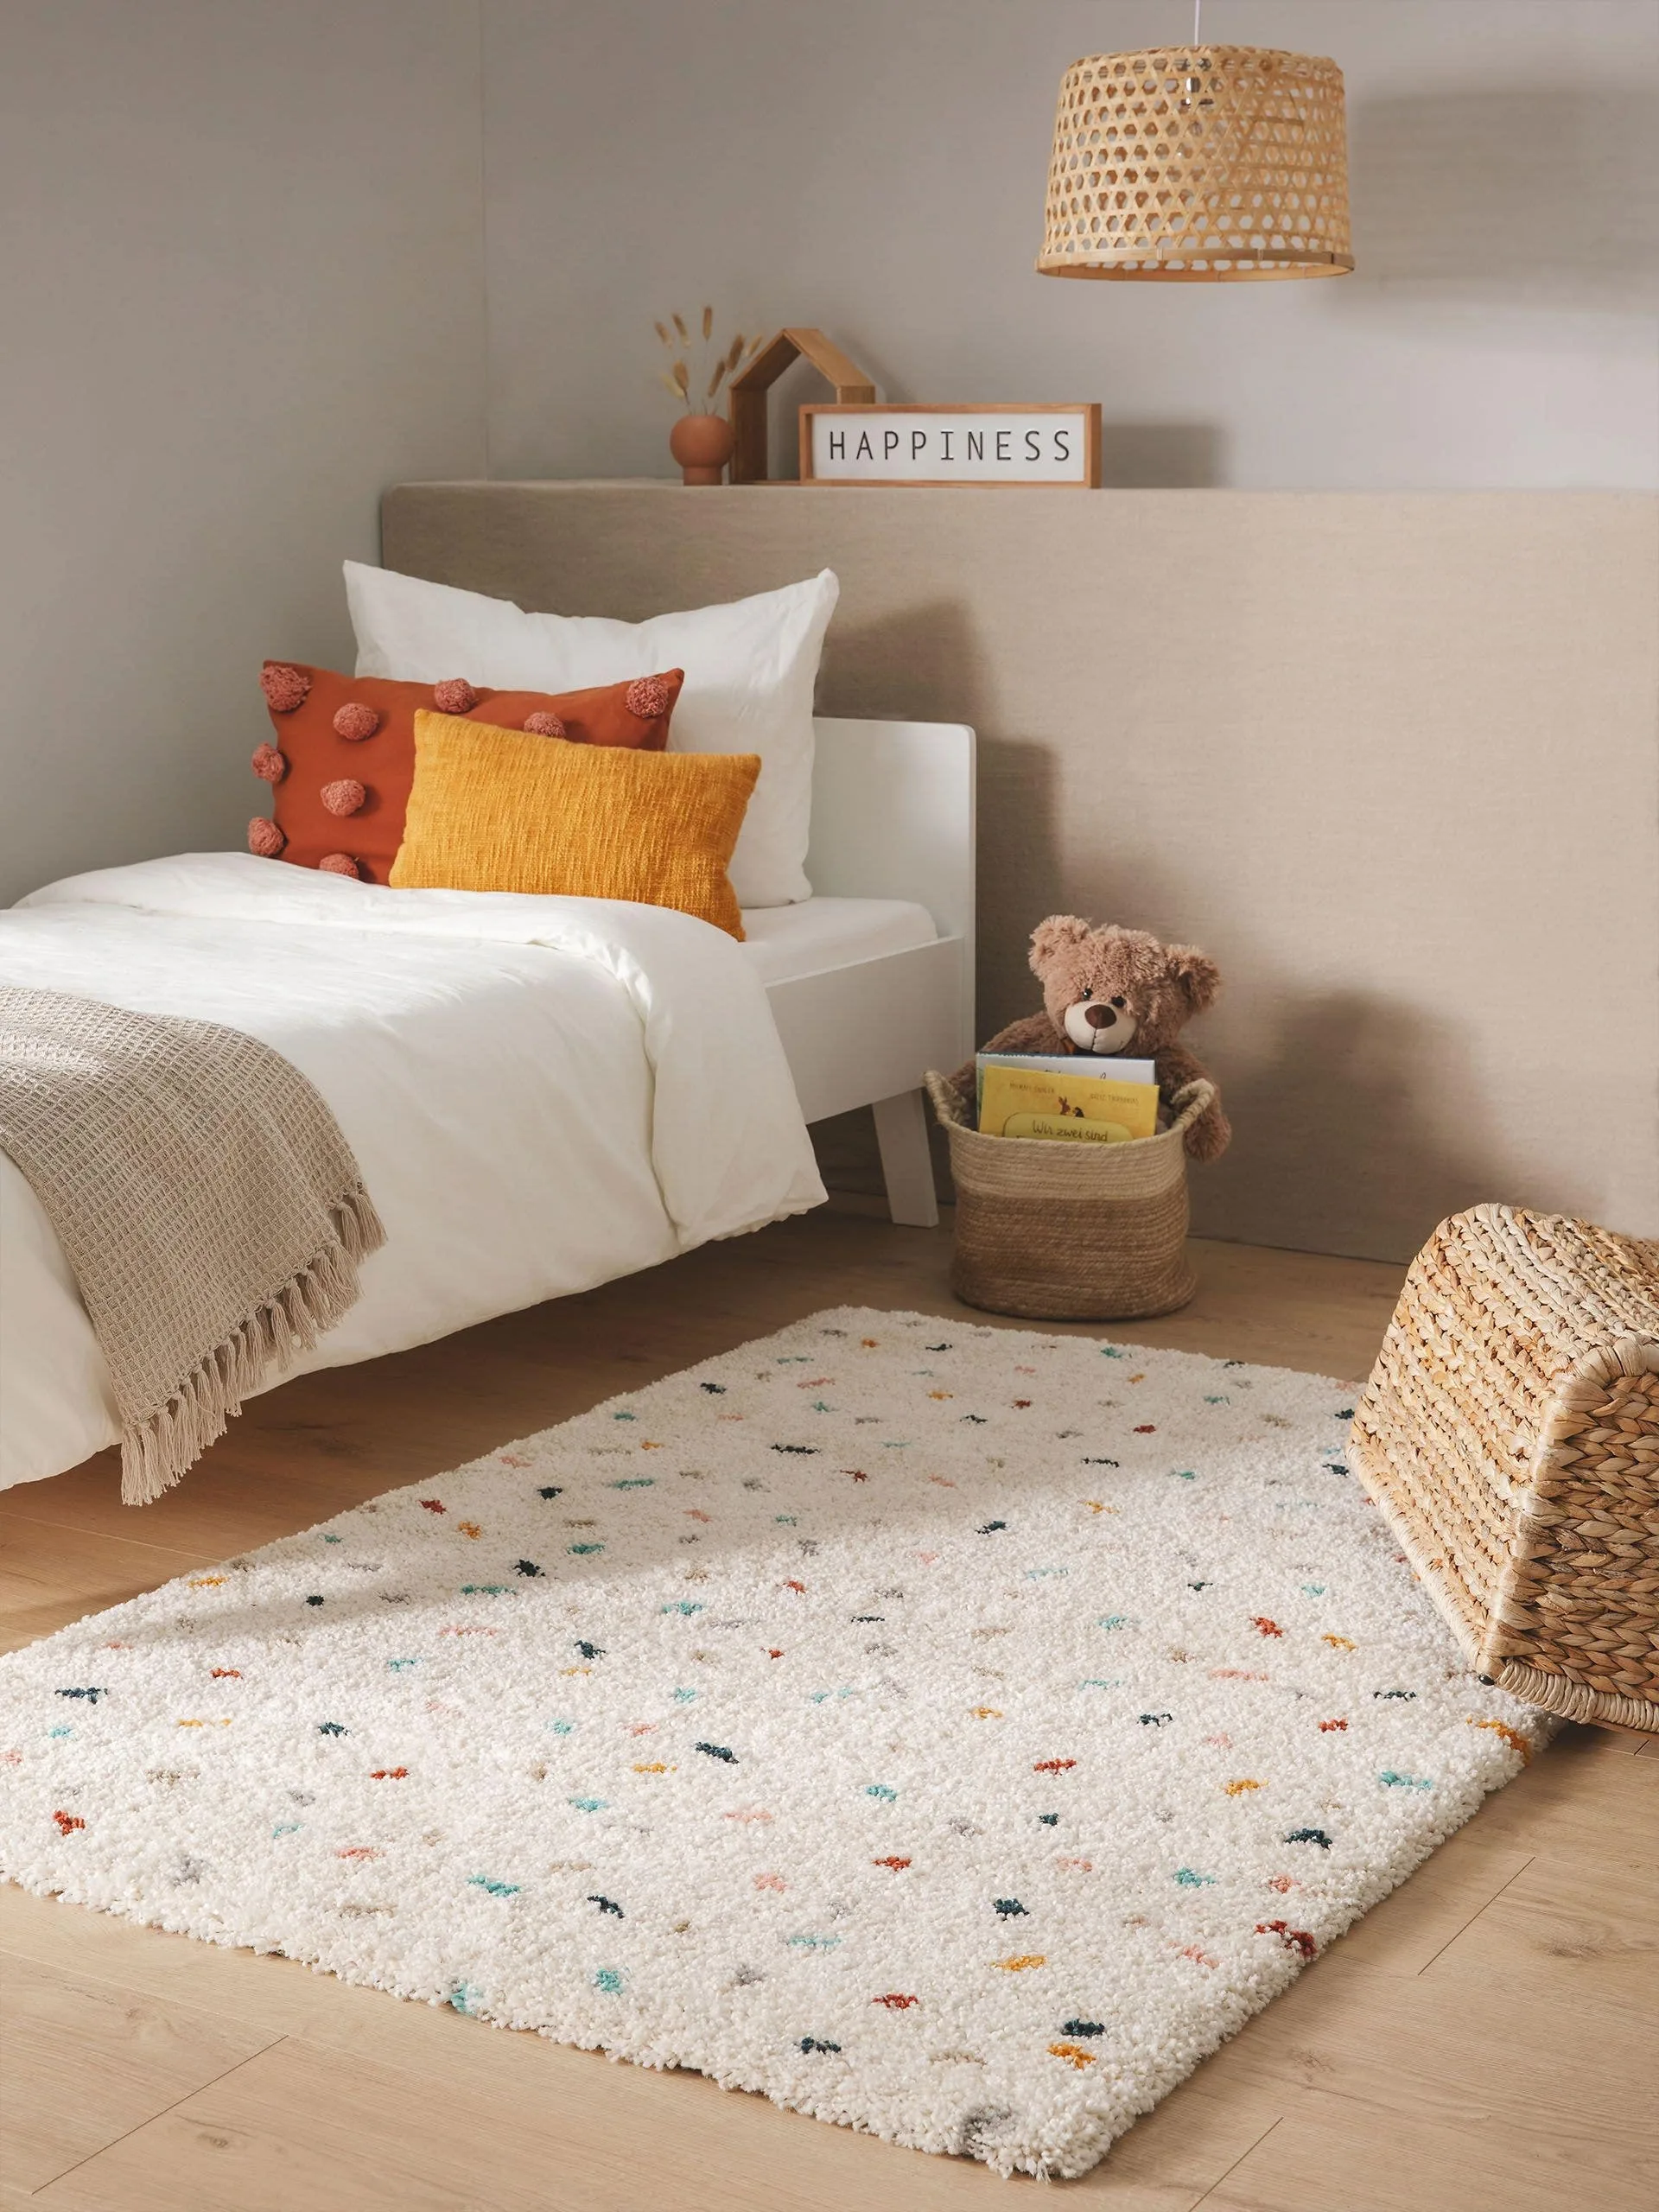 Kinderzimmereinrichtung mit einem weißen Teppich mit bunten Punkten, farbenfrohe Kissen auf einem Einzelbett und einer Spielzeugtruhe und einem Hanf-Korb in der Ecke, in dem ein Kuscheltier und Bücher verstaut wurden